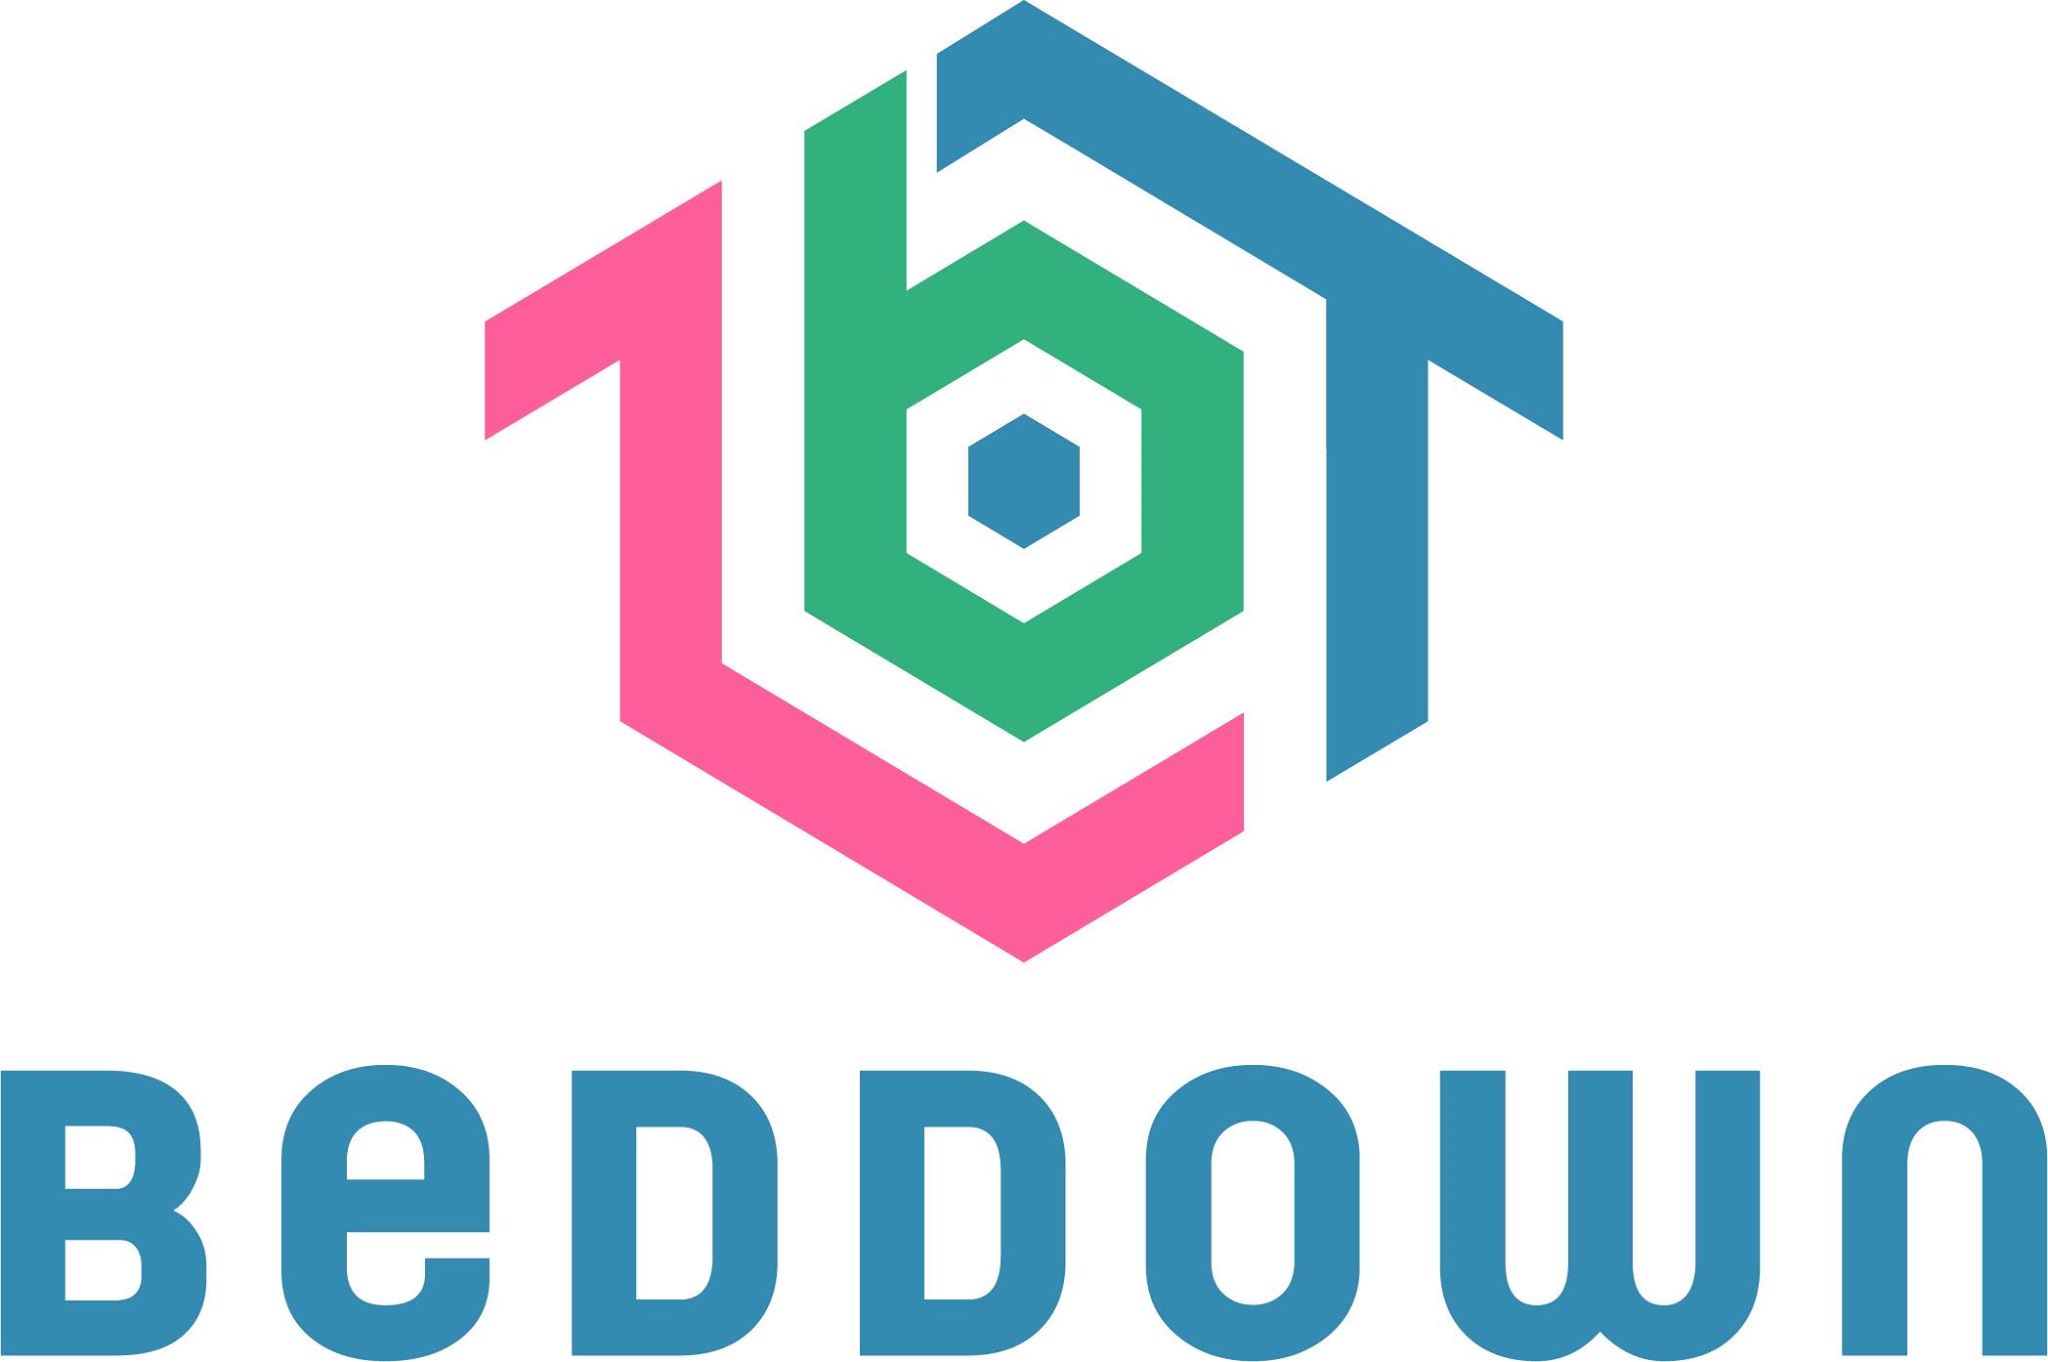 Beddown Ltd logo